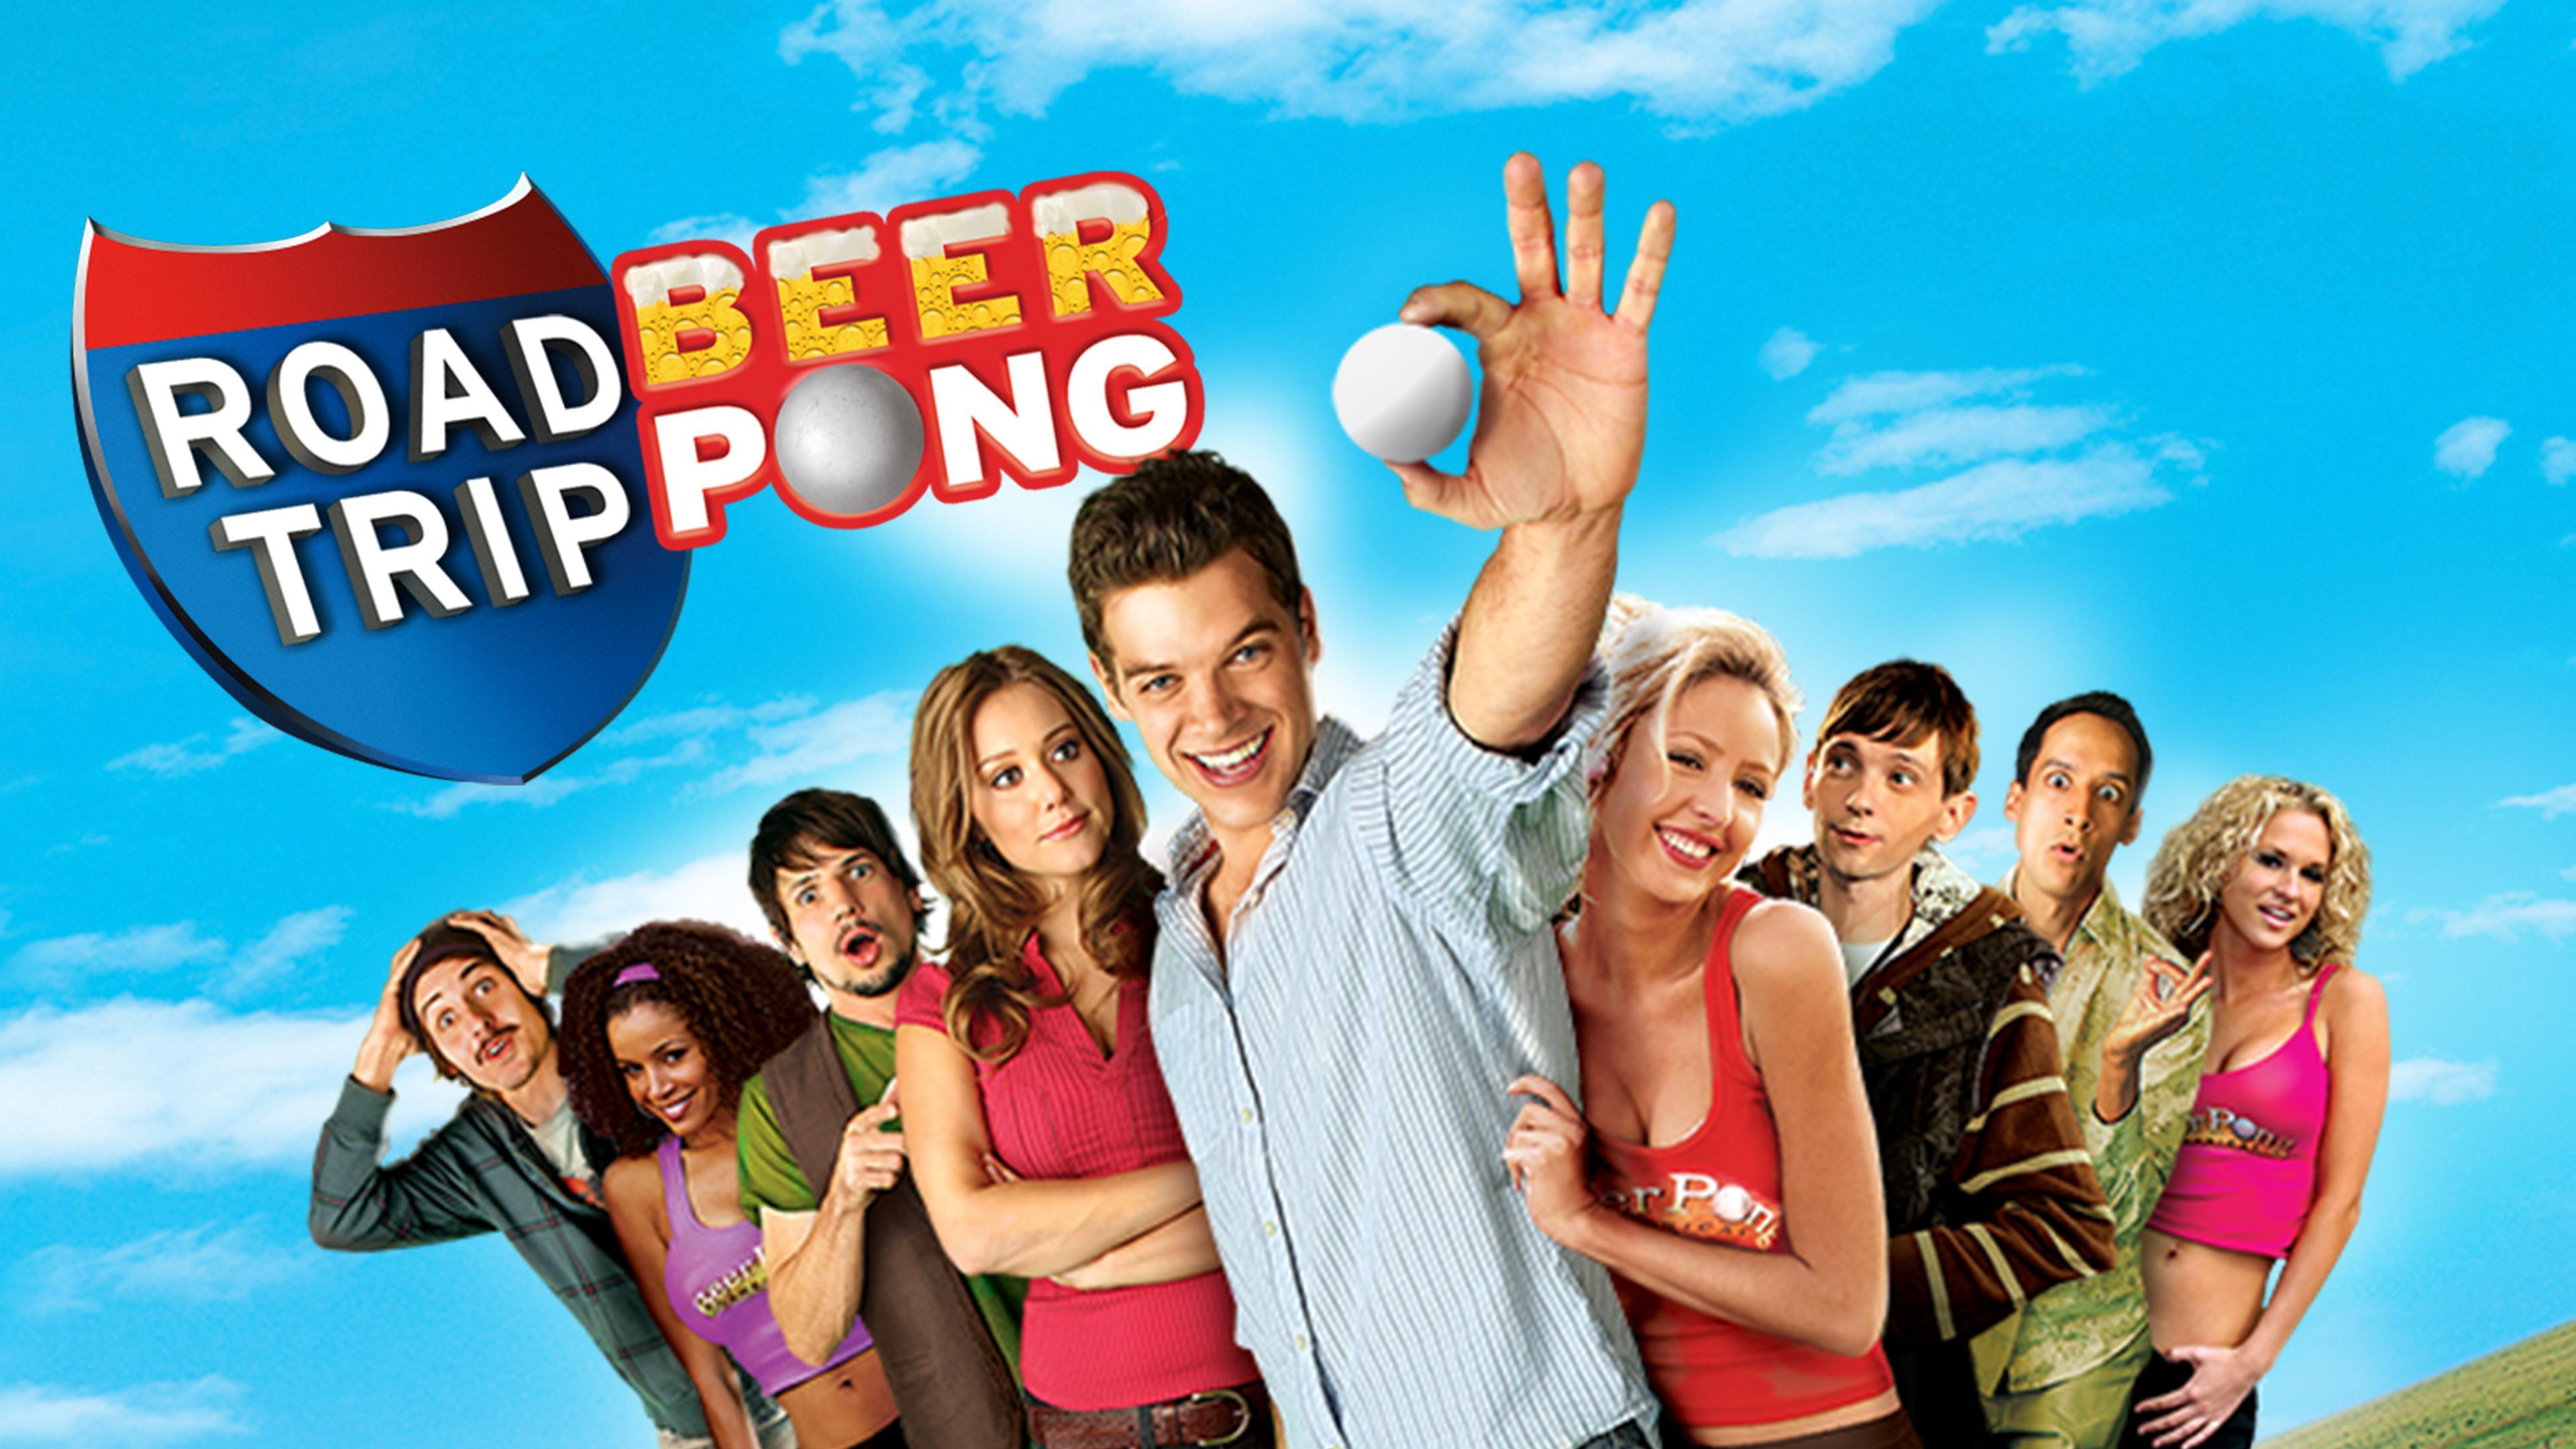 Road Trip: Beer Pong (HBO)